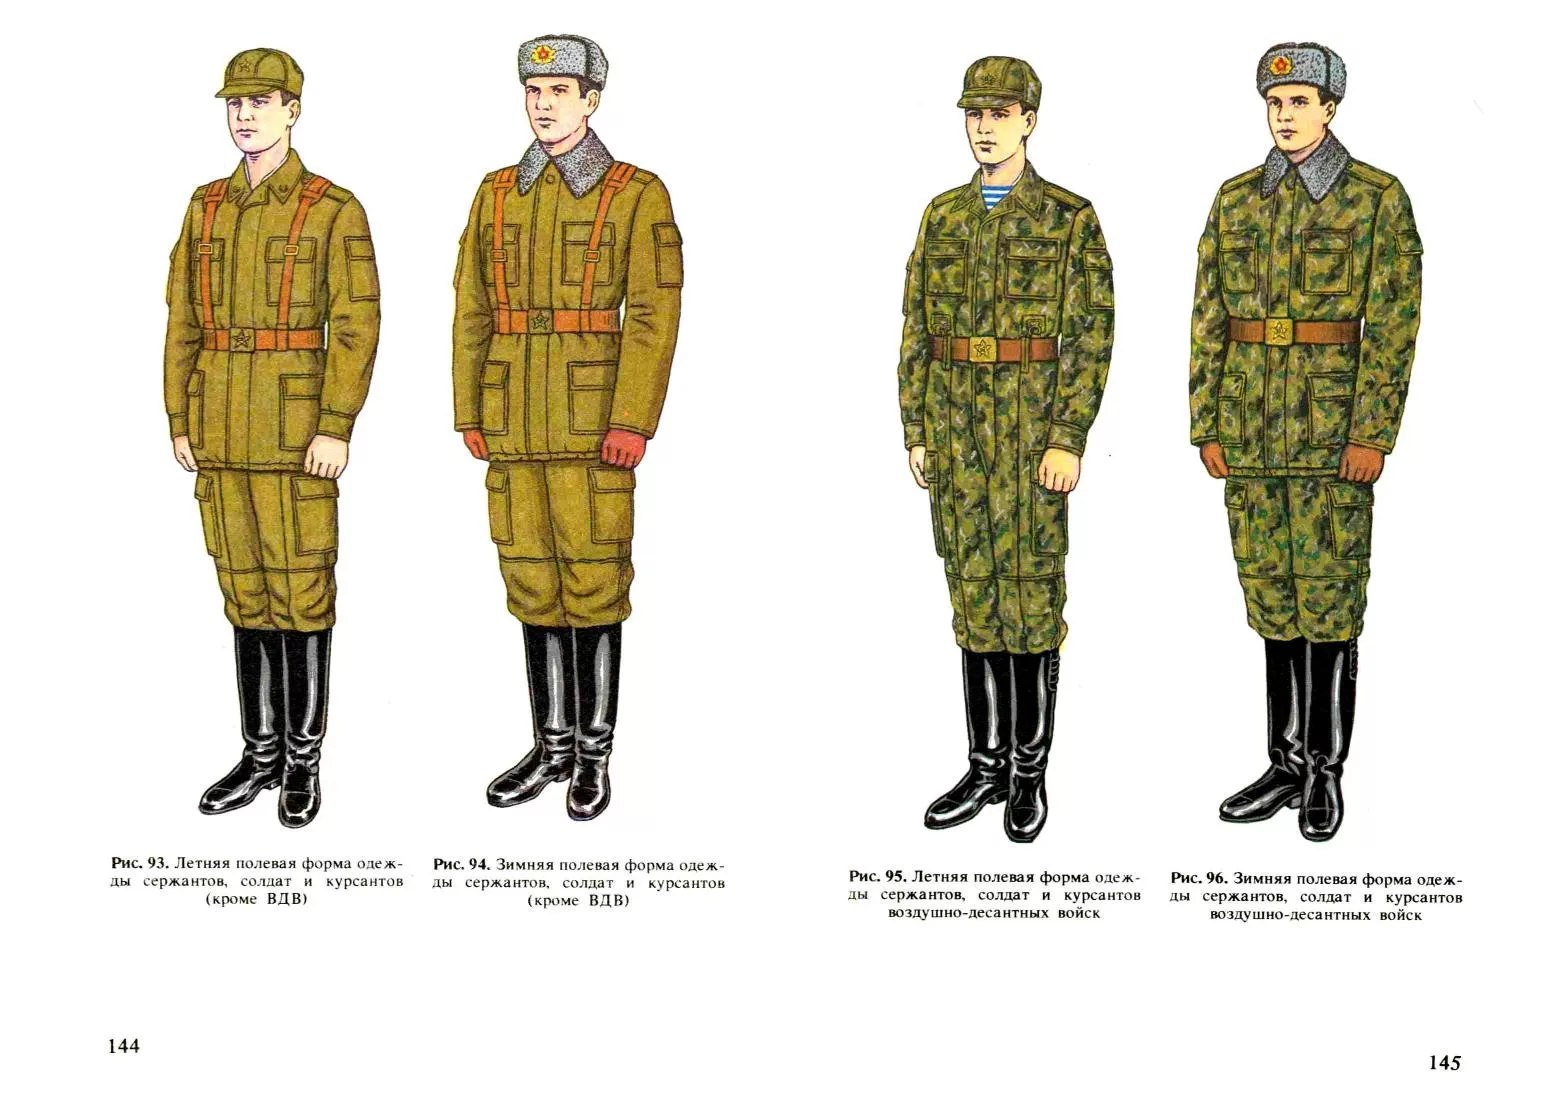 Полевая форма офицера Советской армии до 1969